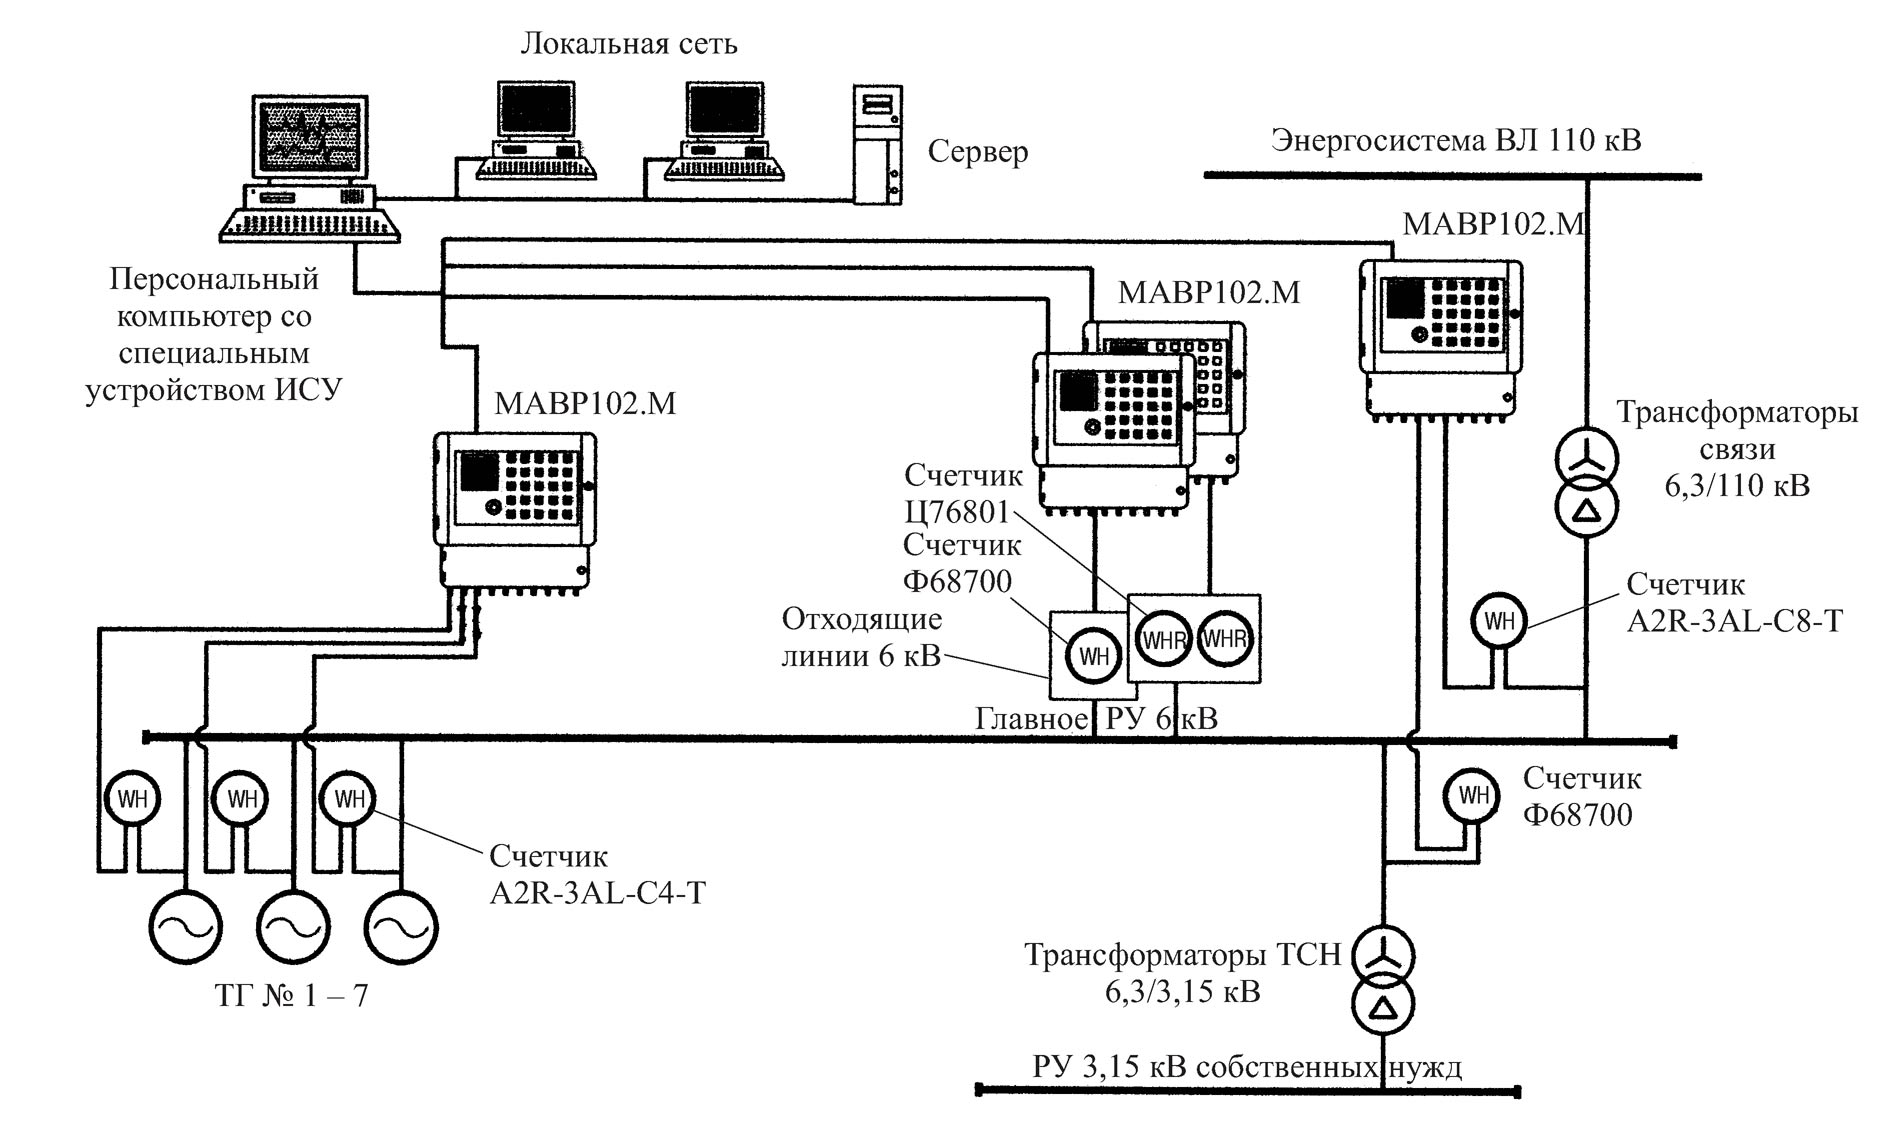 Система АСКУЭ включает в себя основные элементы – электронные счетчики, которые являются преобразователями аналогового сигнала в